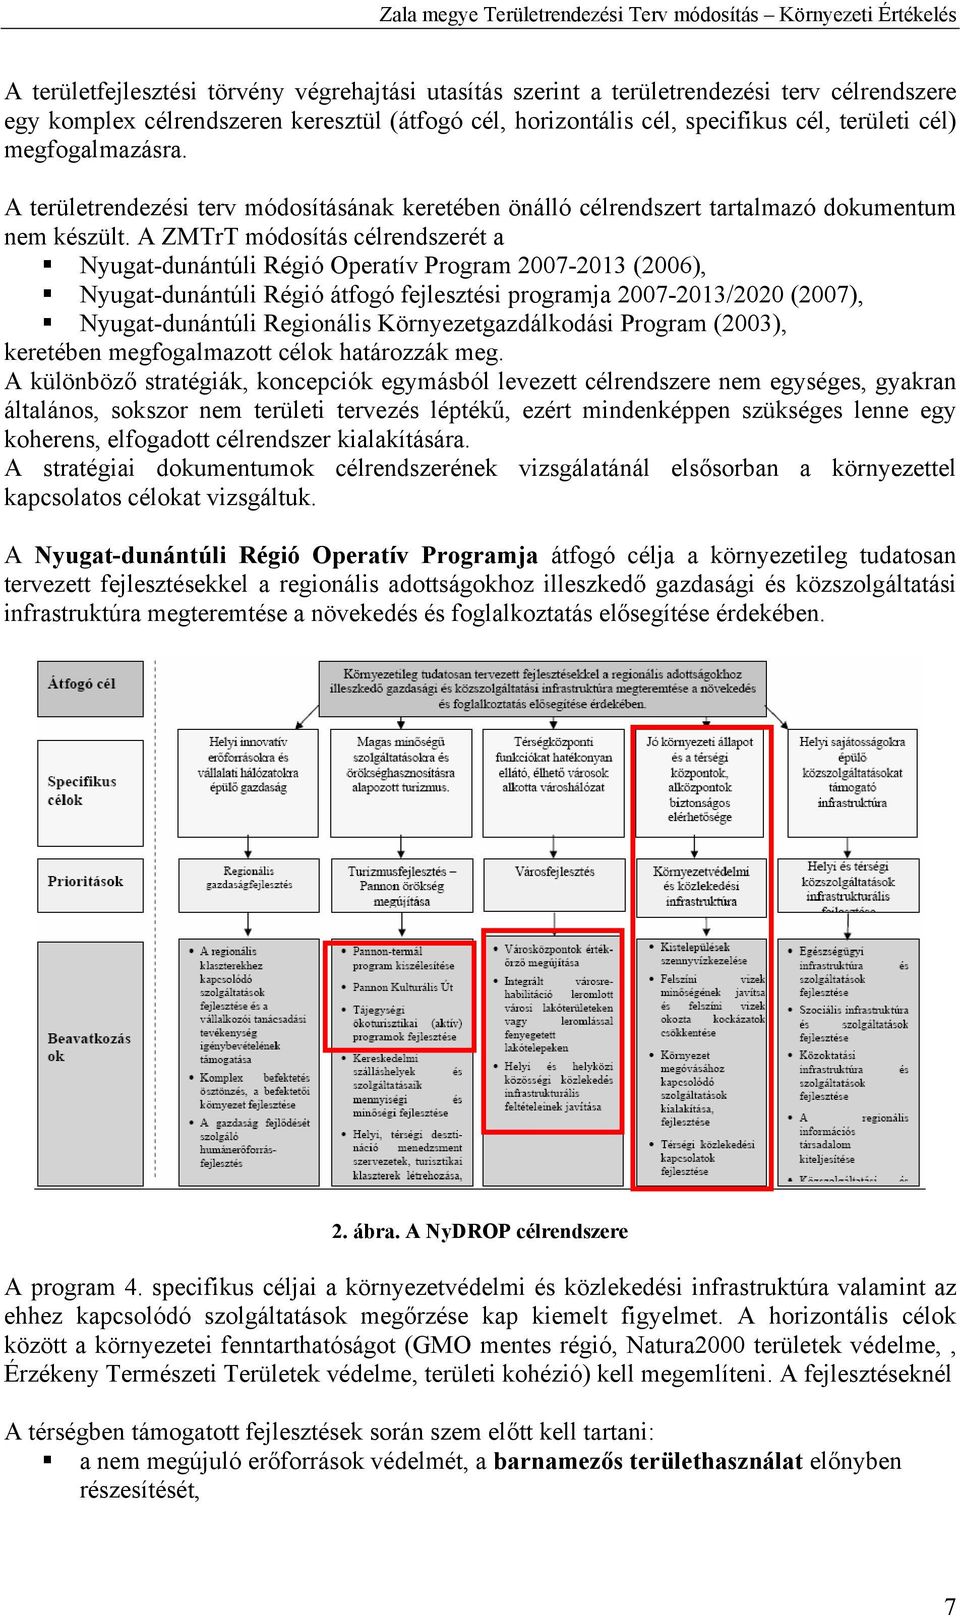 A ZMTrT módosítás célrendszerét a Nyugat-dunántúli Régió Operatív Program 2007-2013 (2006), Nyugat-dunántúli Régió átfogó fejlesztési programja 2007-2013/2020 (2007), Nyugat-dunántúli Regionális